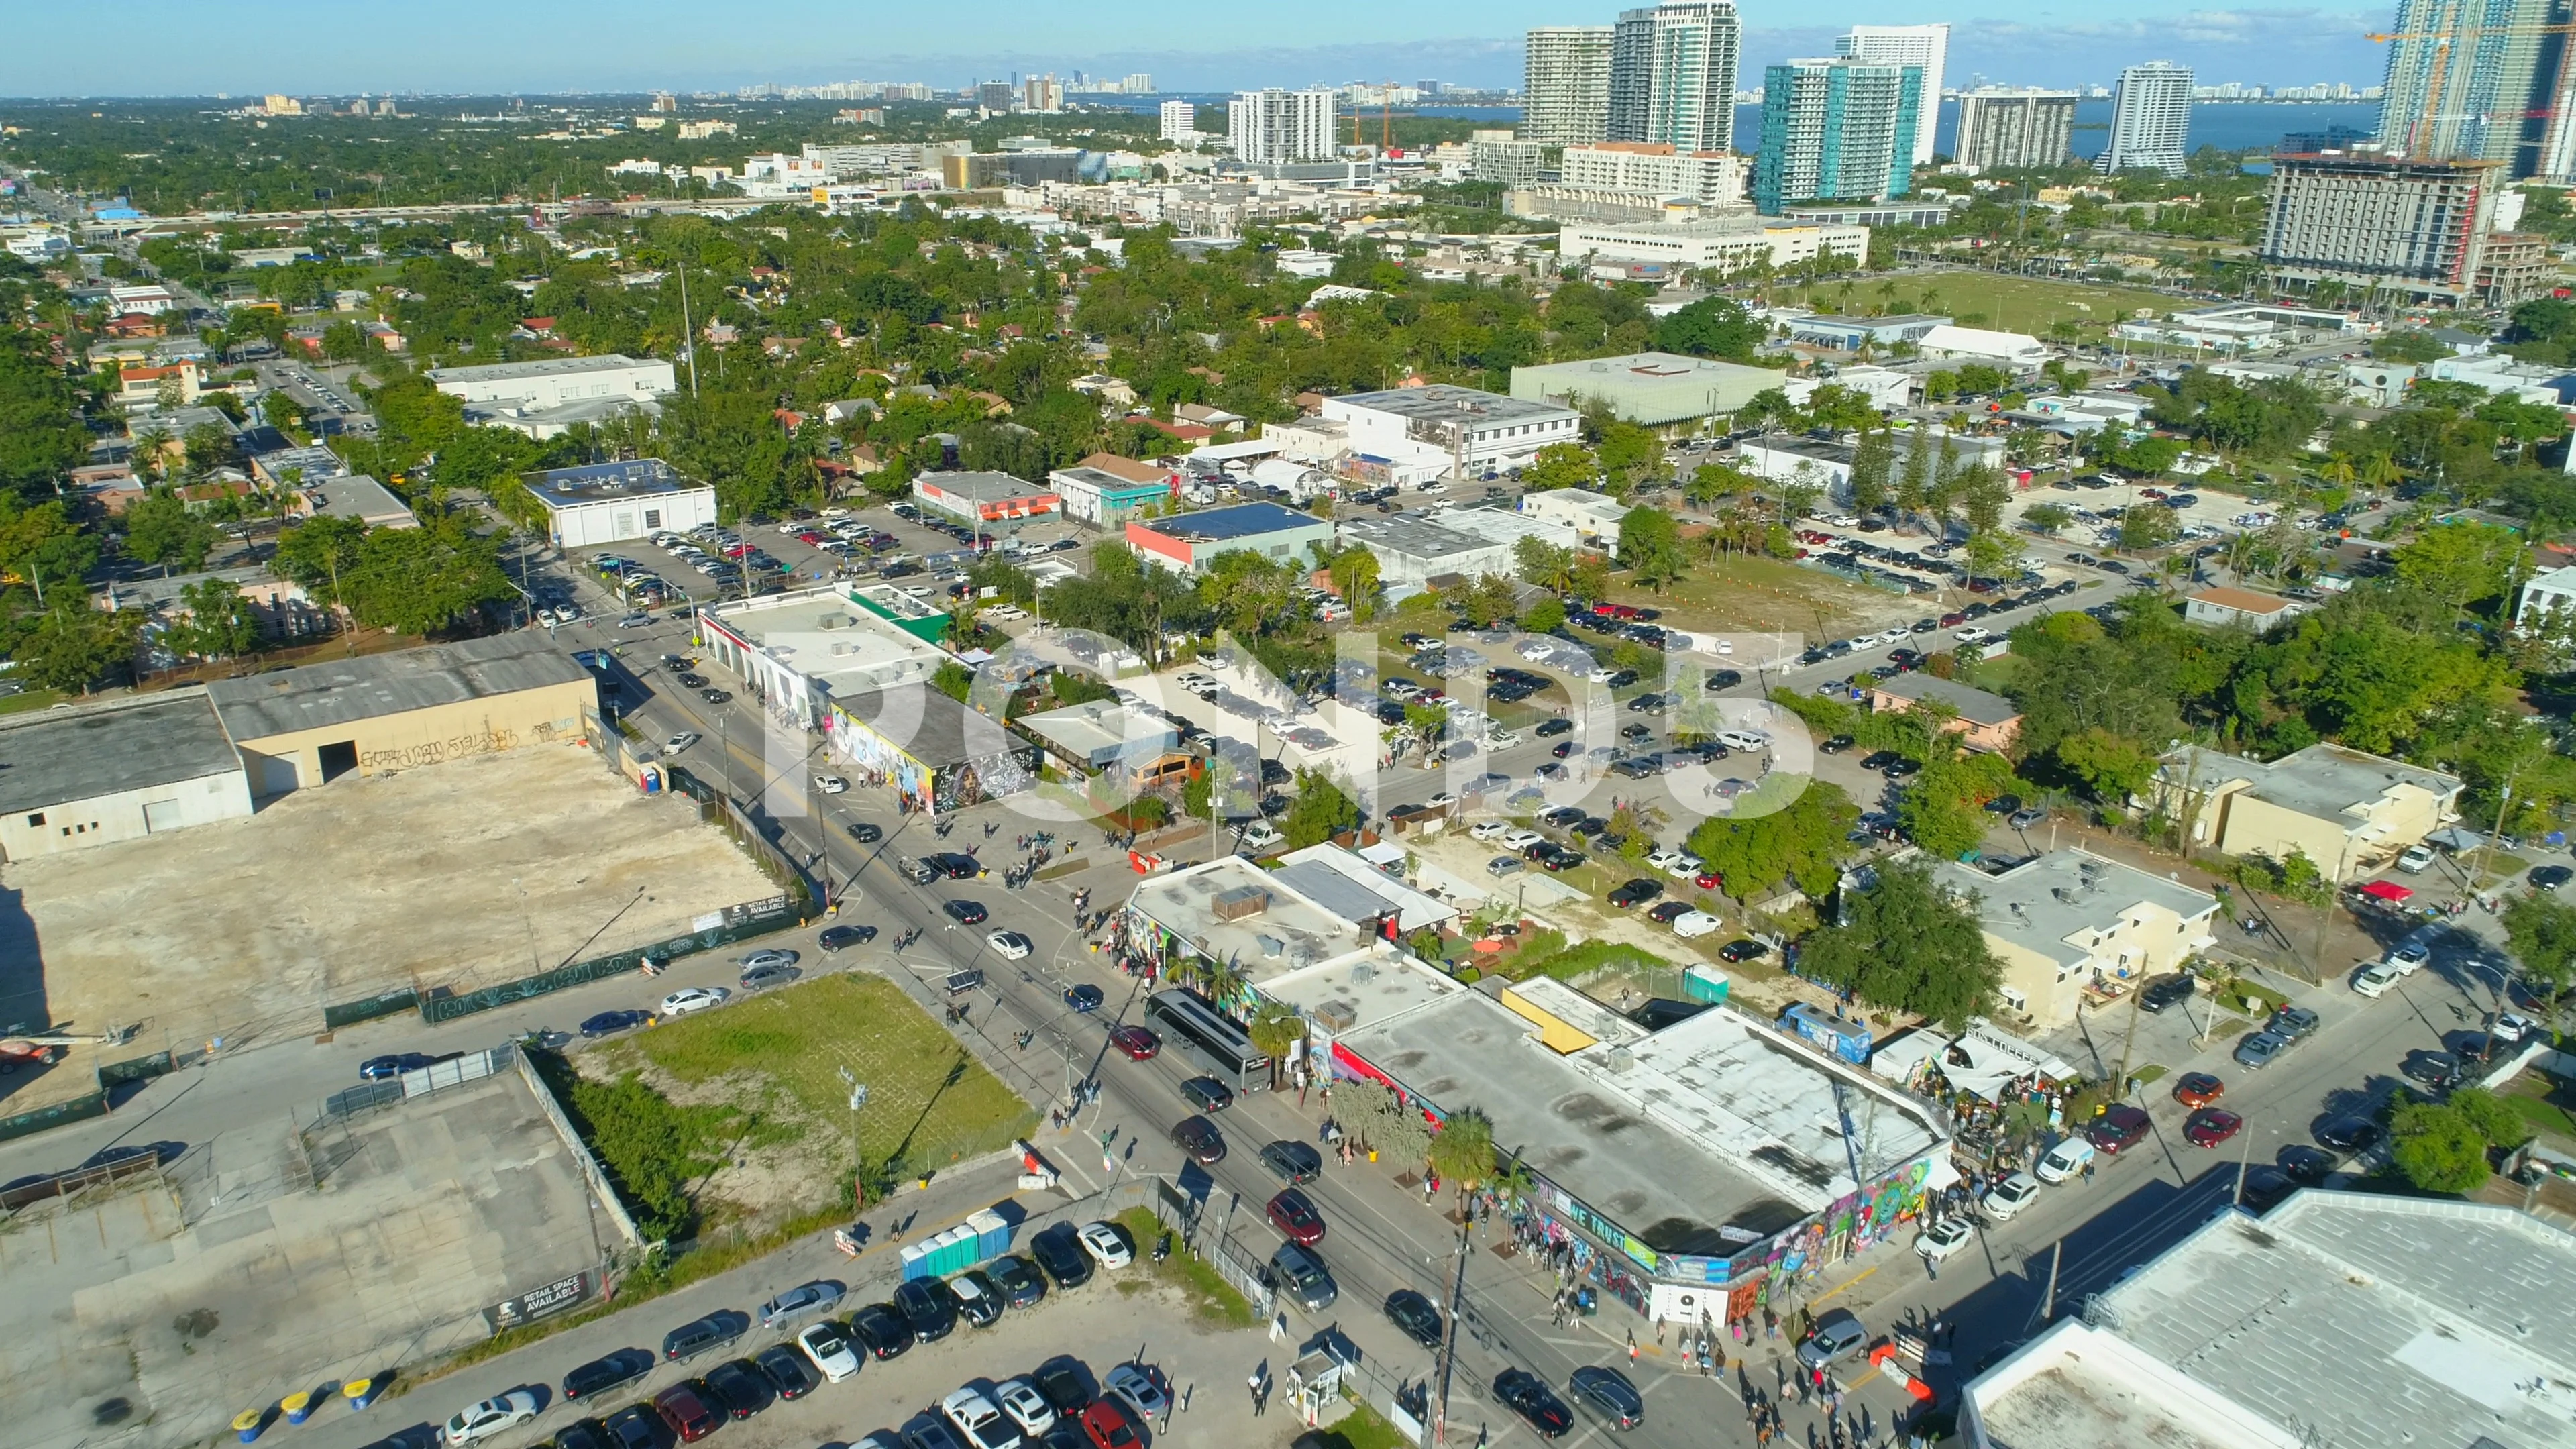 Wynwood Miami Beach Florida Usa Stock Photo - Download Image Now